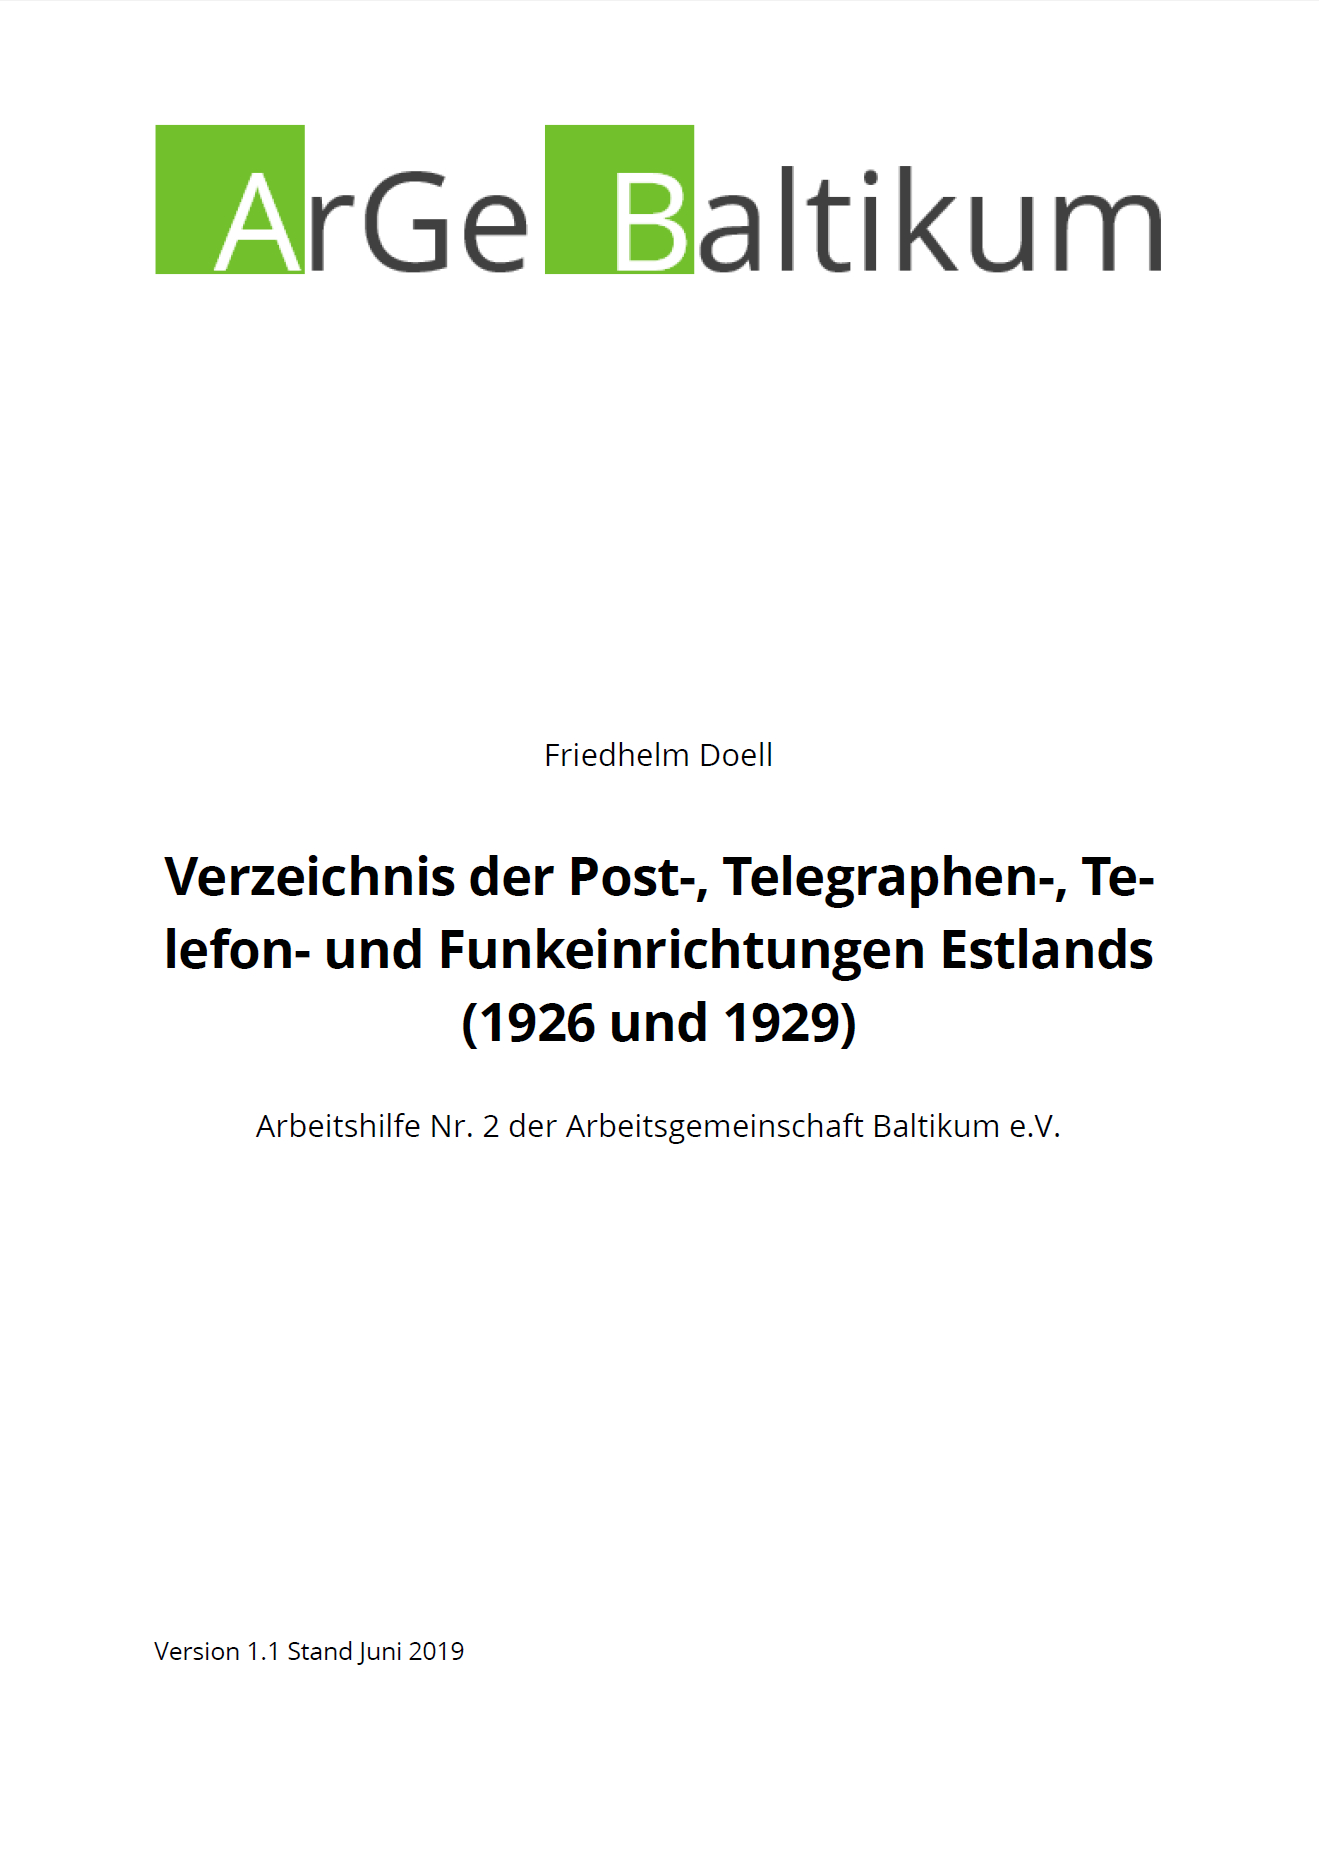 Buchtitel Arbeitshilfe Nr. 2 Verzeichnis der Post-, Telegraphen-, Telefon- und Funkeinrichtungen Estlands (1926 und 1929)